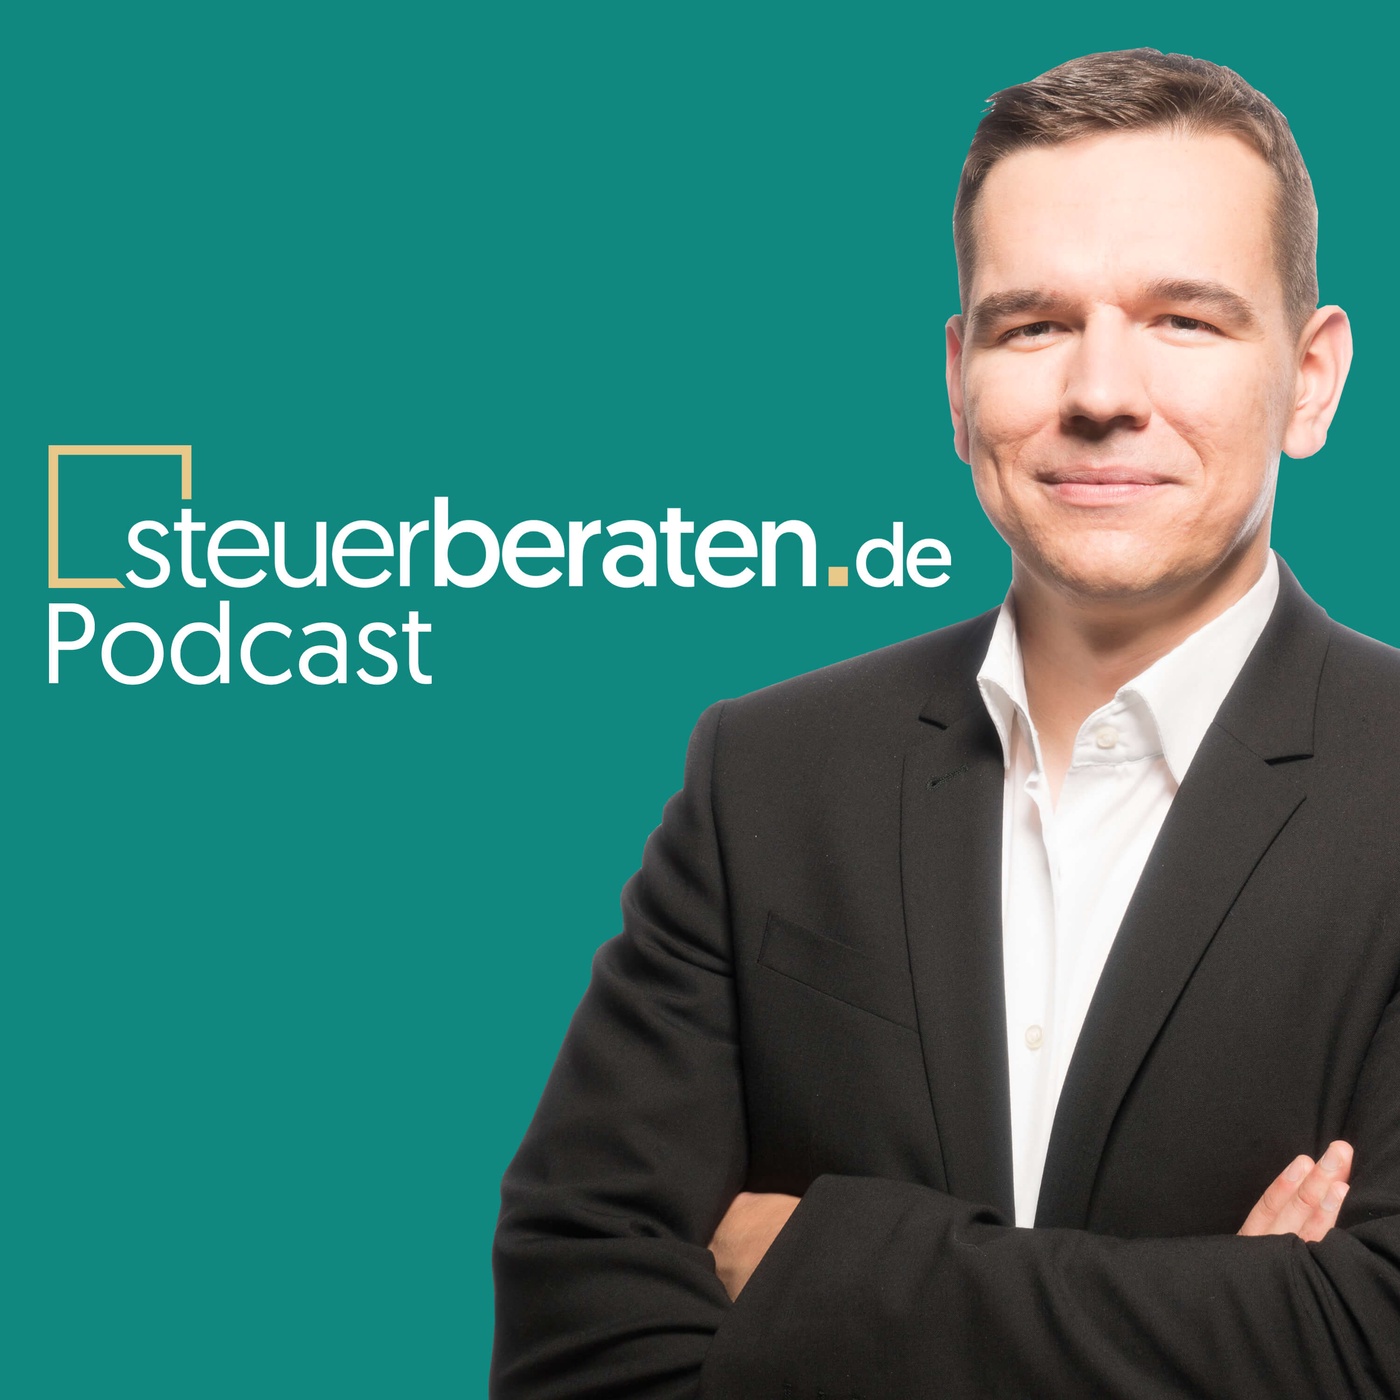 steuerberaten.de Podcast – mit Christian Gebert